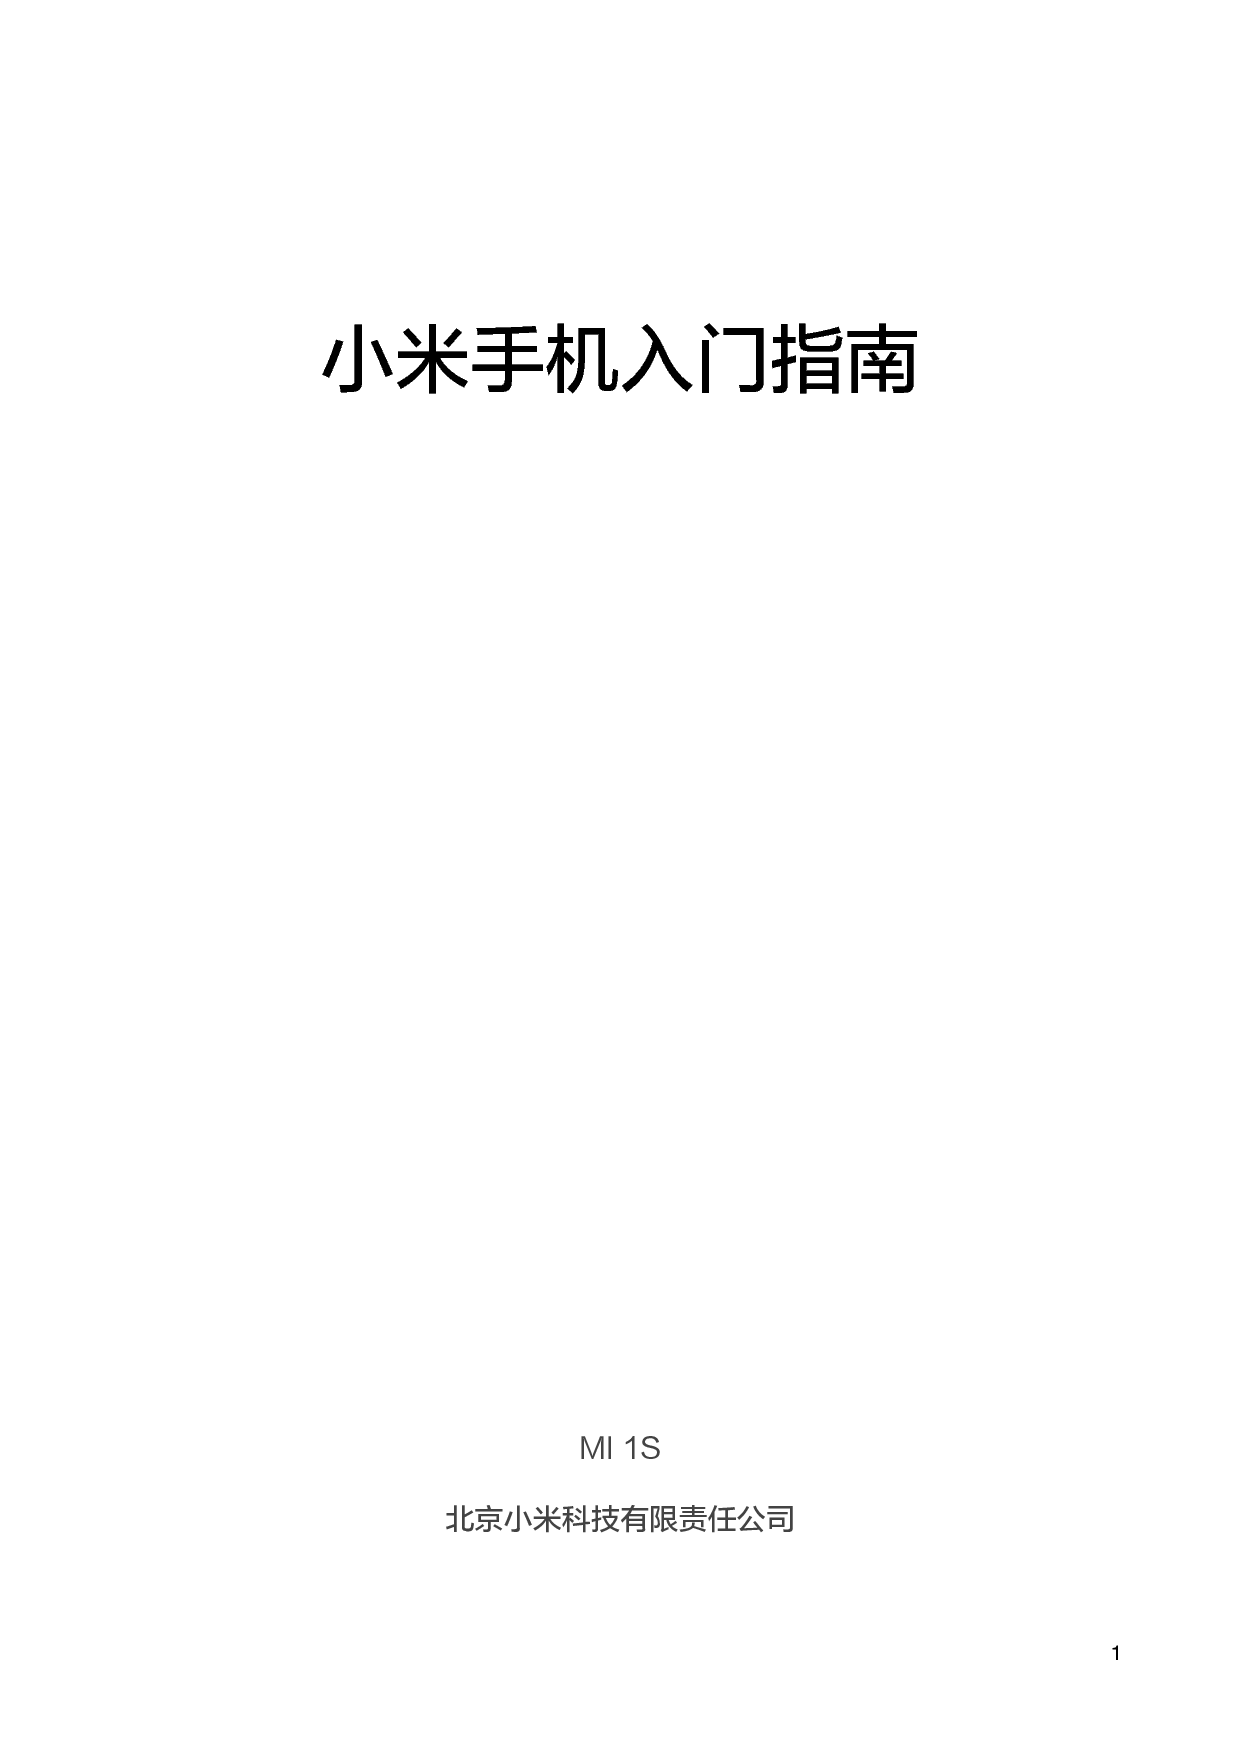 小米 Xiaomi MI 1S 用户手册 封面